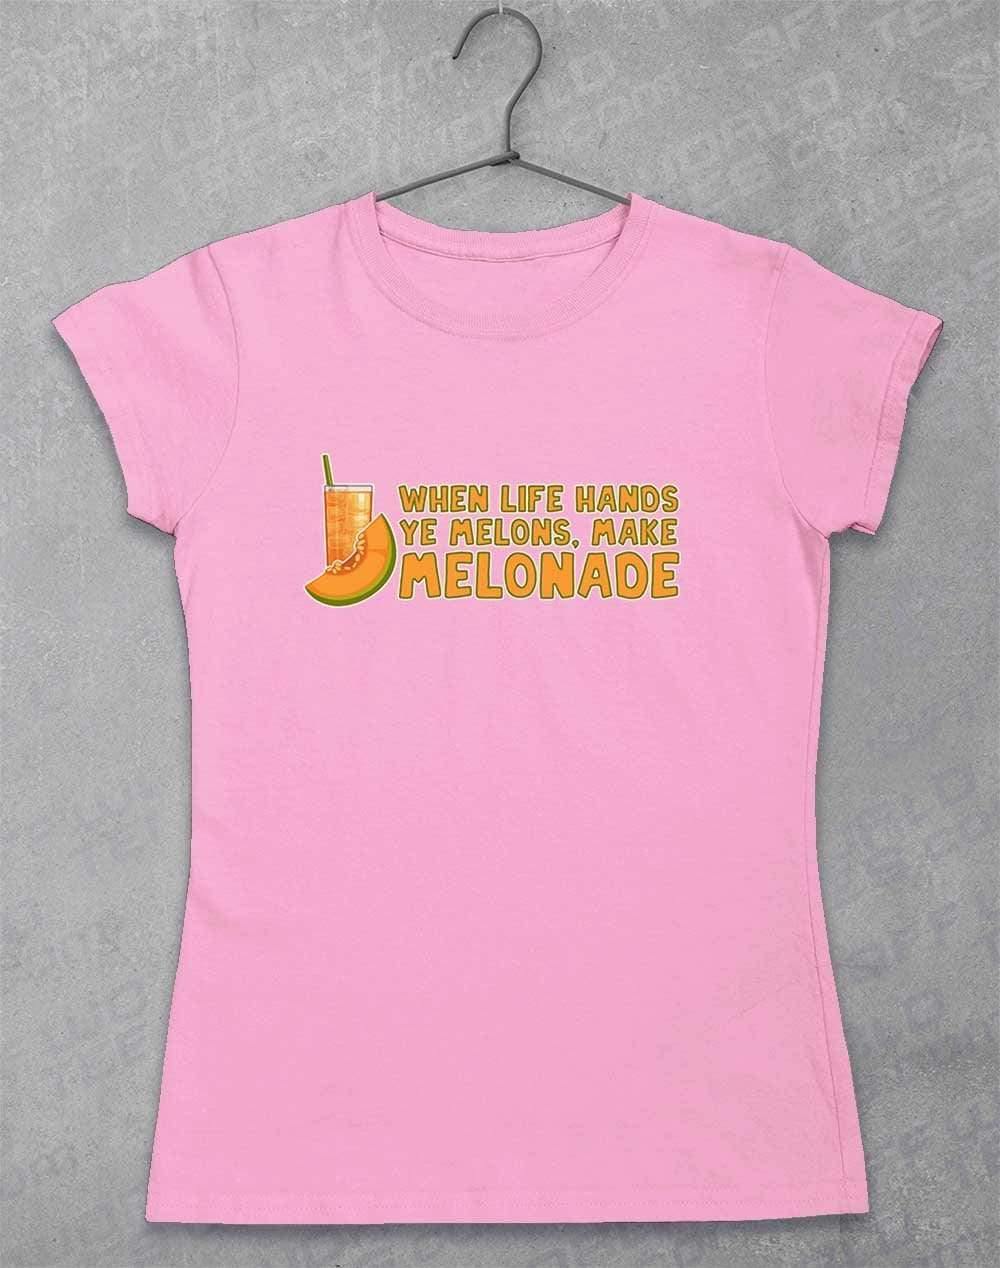 Make Melonade Womens T-Shirt 8-10 / Light Pink  - Off World Tees